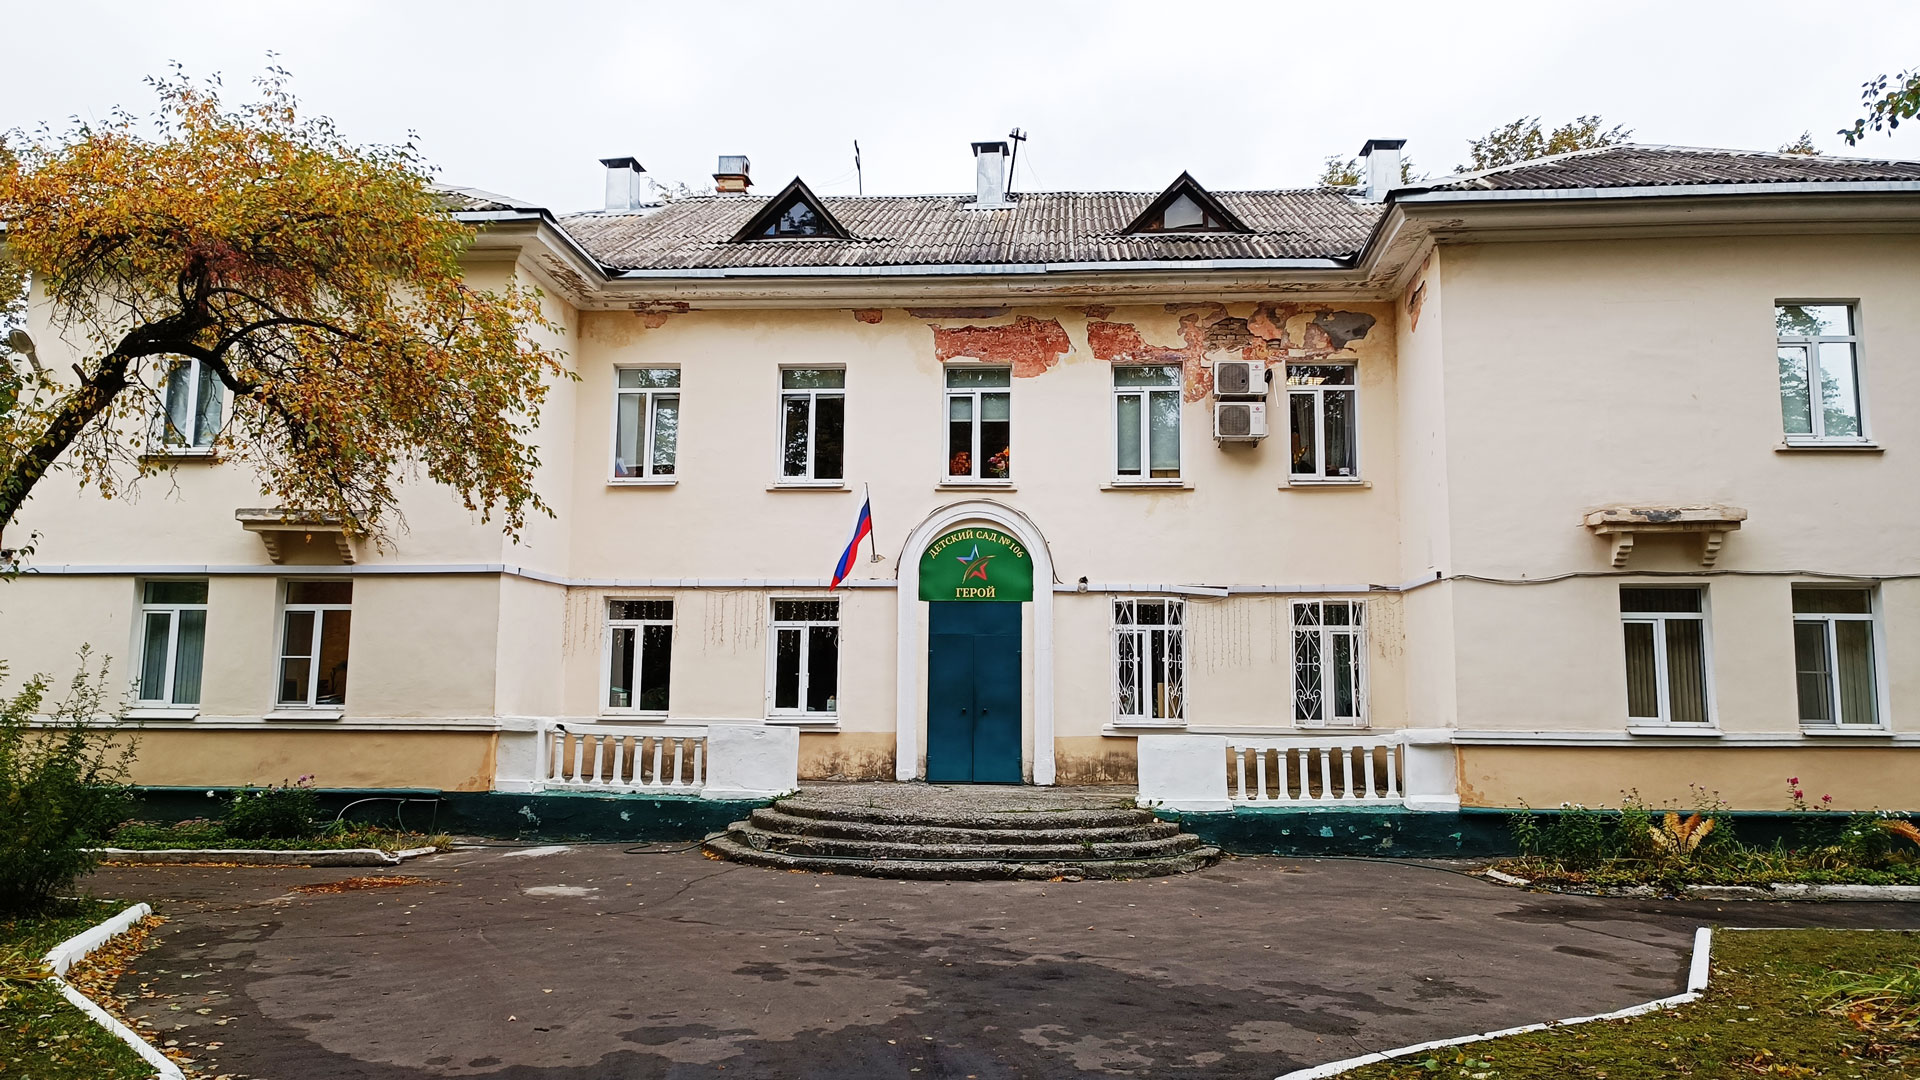 Детский сад 106 Ярославль: главный вход в здание садика.